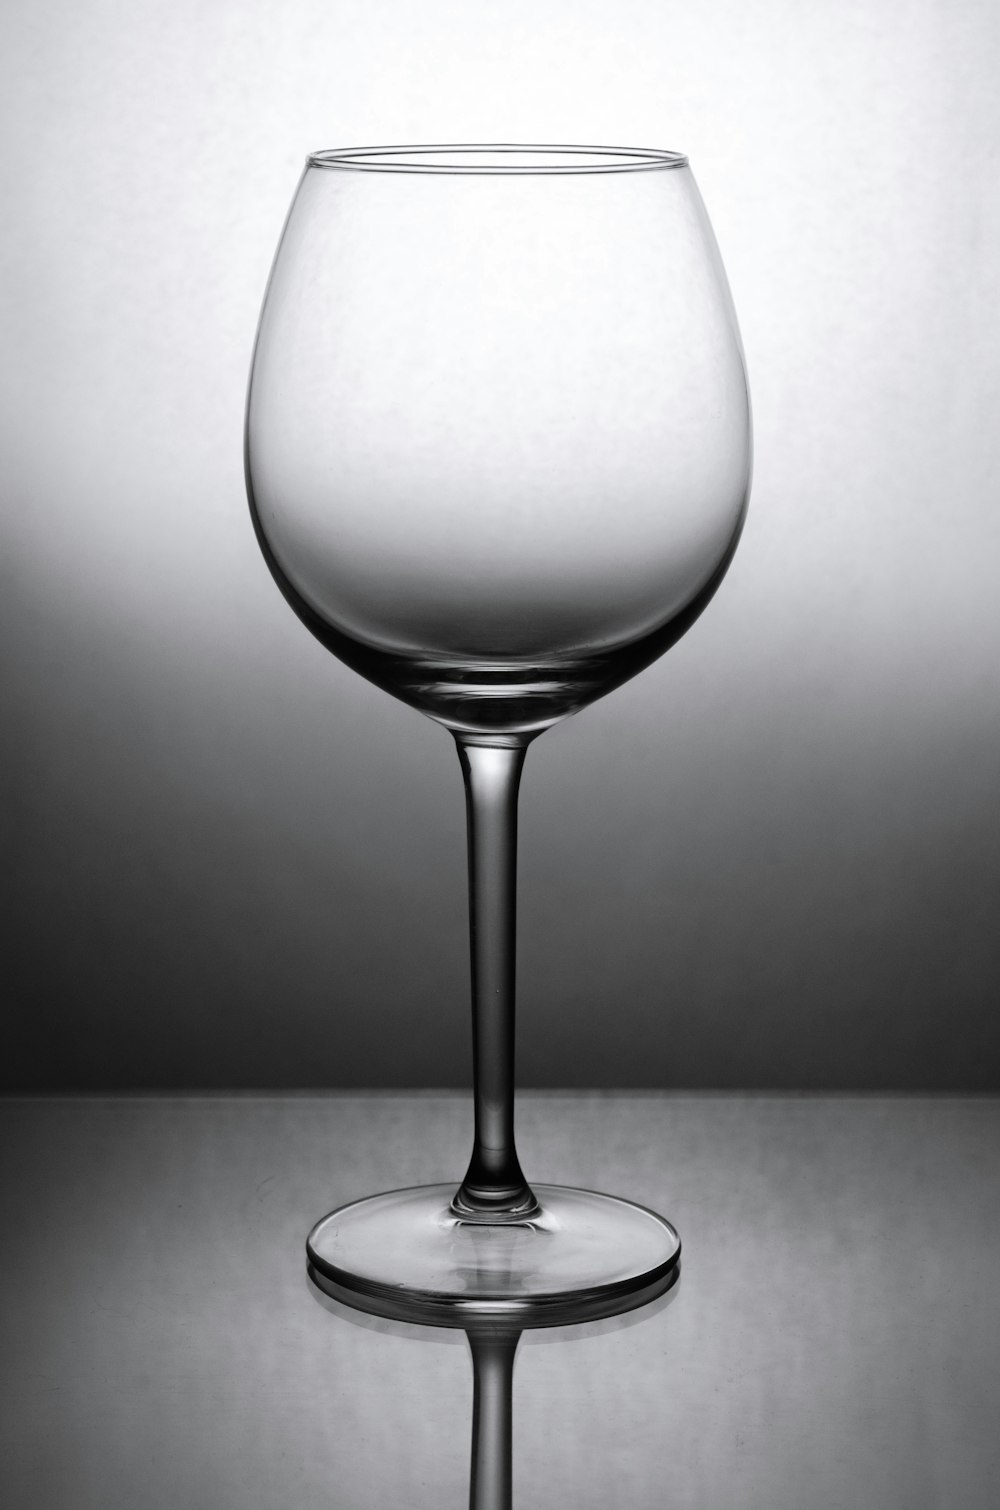 foto in scala di grigi del bicchiere di vino